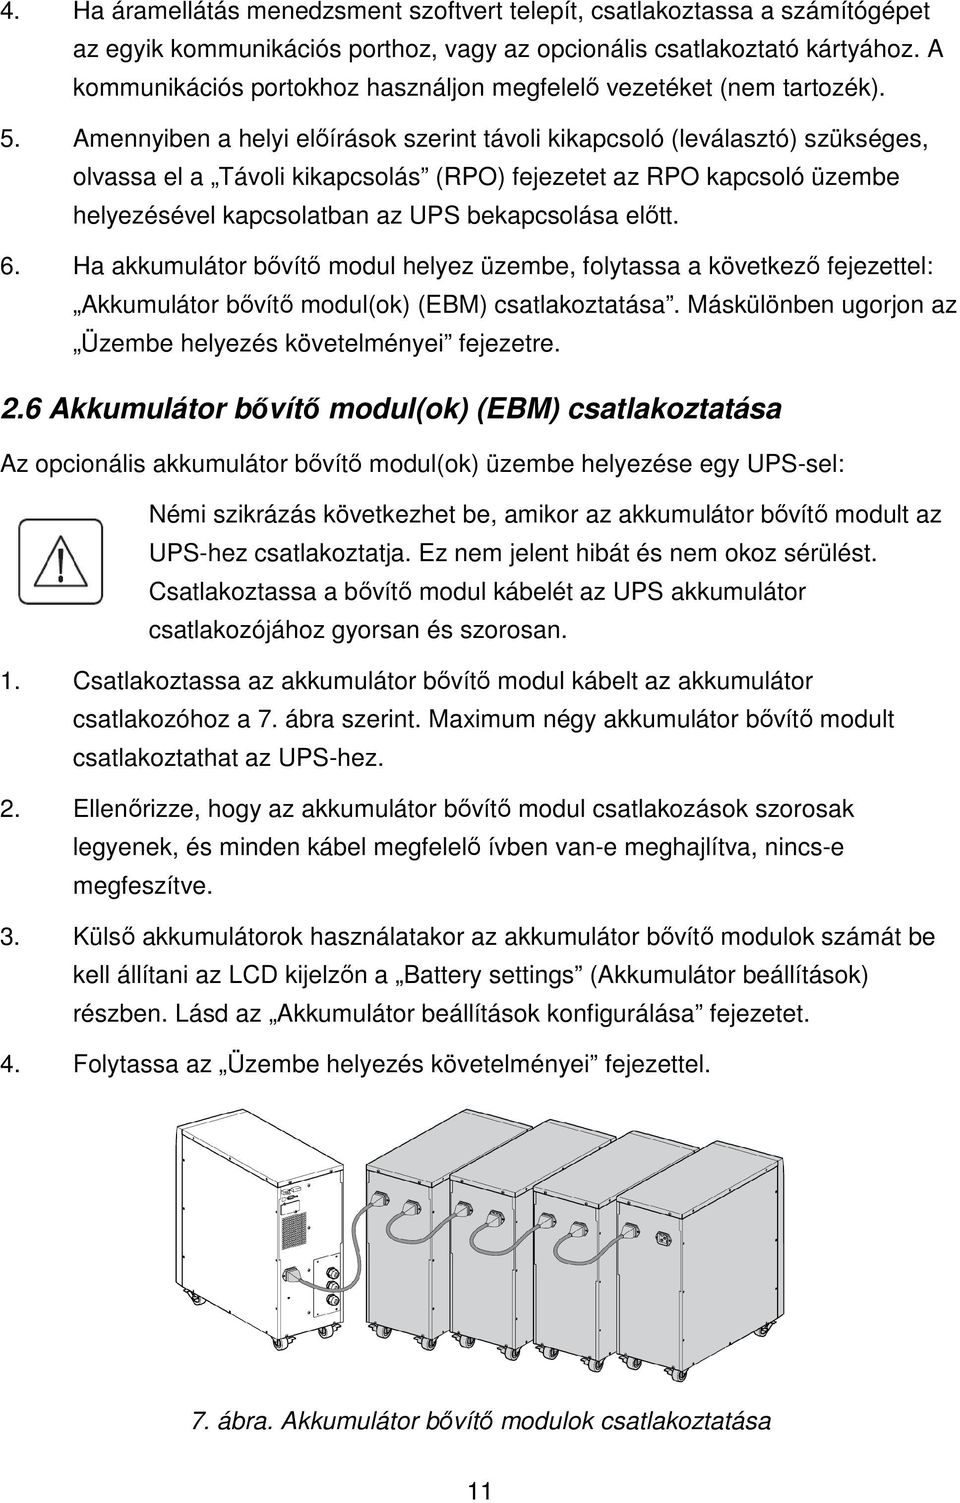 Amennyiben a helyi elıírások szerint távoli kikapcsoló (leválasztó) szükséges, olvassa el a Távoli kikapcsolás (RPO) fejezetet az RPO kapcsoló üzembe helyezésével kapcsolatban az UPS bekapcsolása